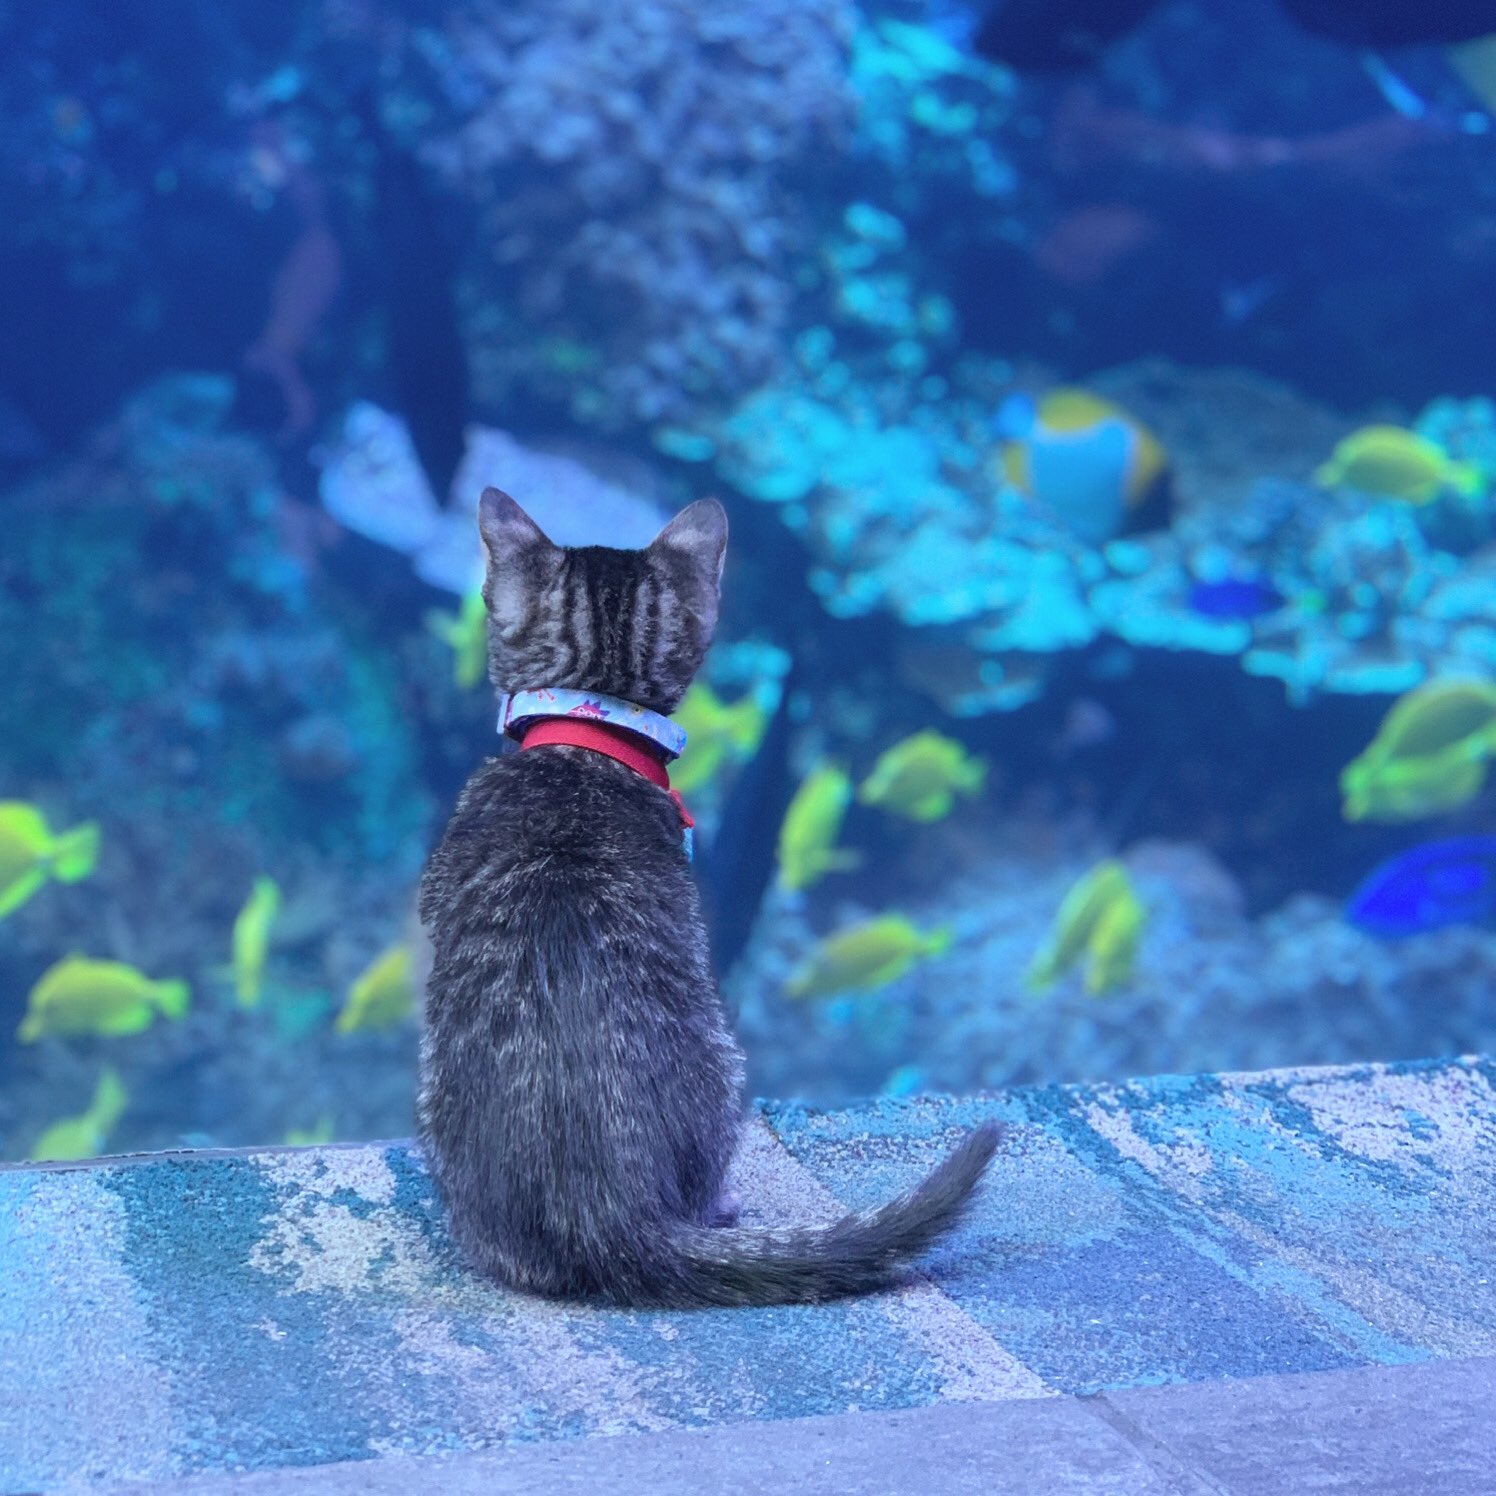 Kittens at the Aquarium